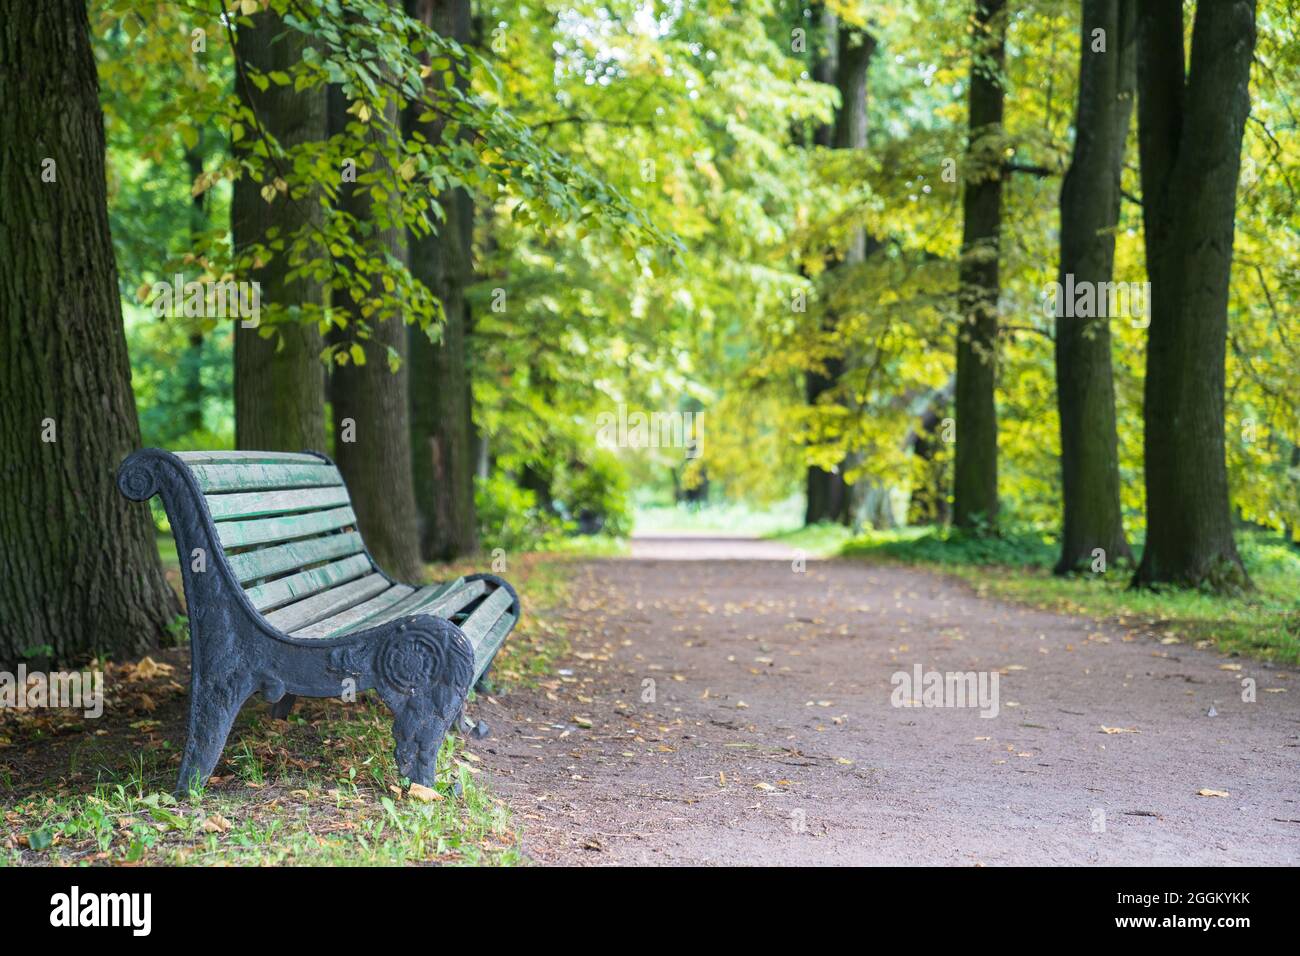 Alte hölzerne bemalte Bank im alten Park. Sommer oder frühen Herbstmorgen im Wald mit grünen Bäumen Stockfoto